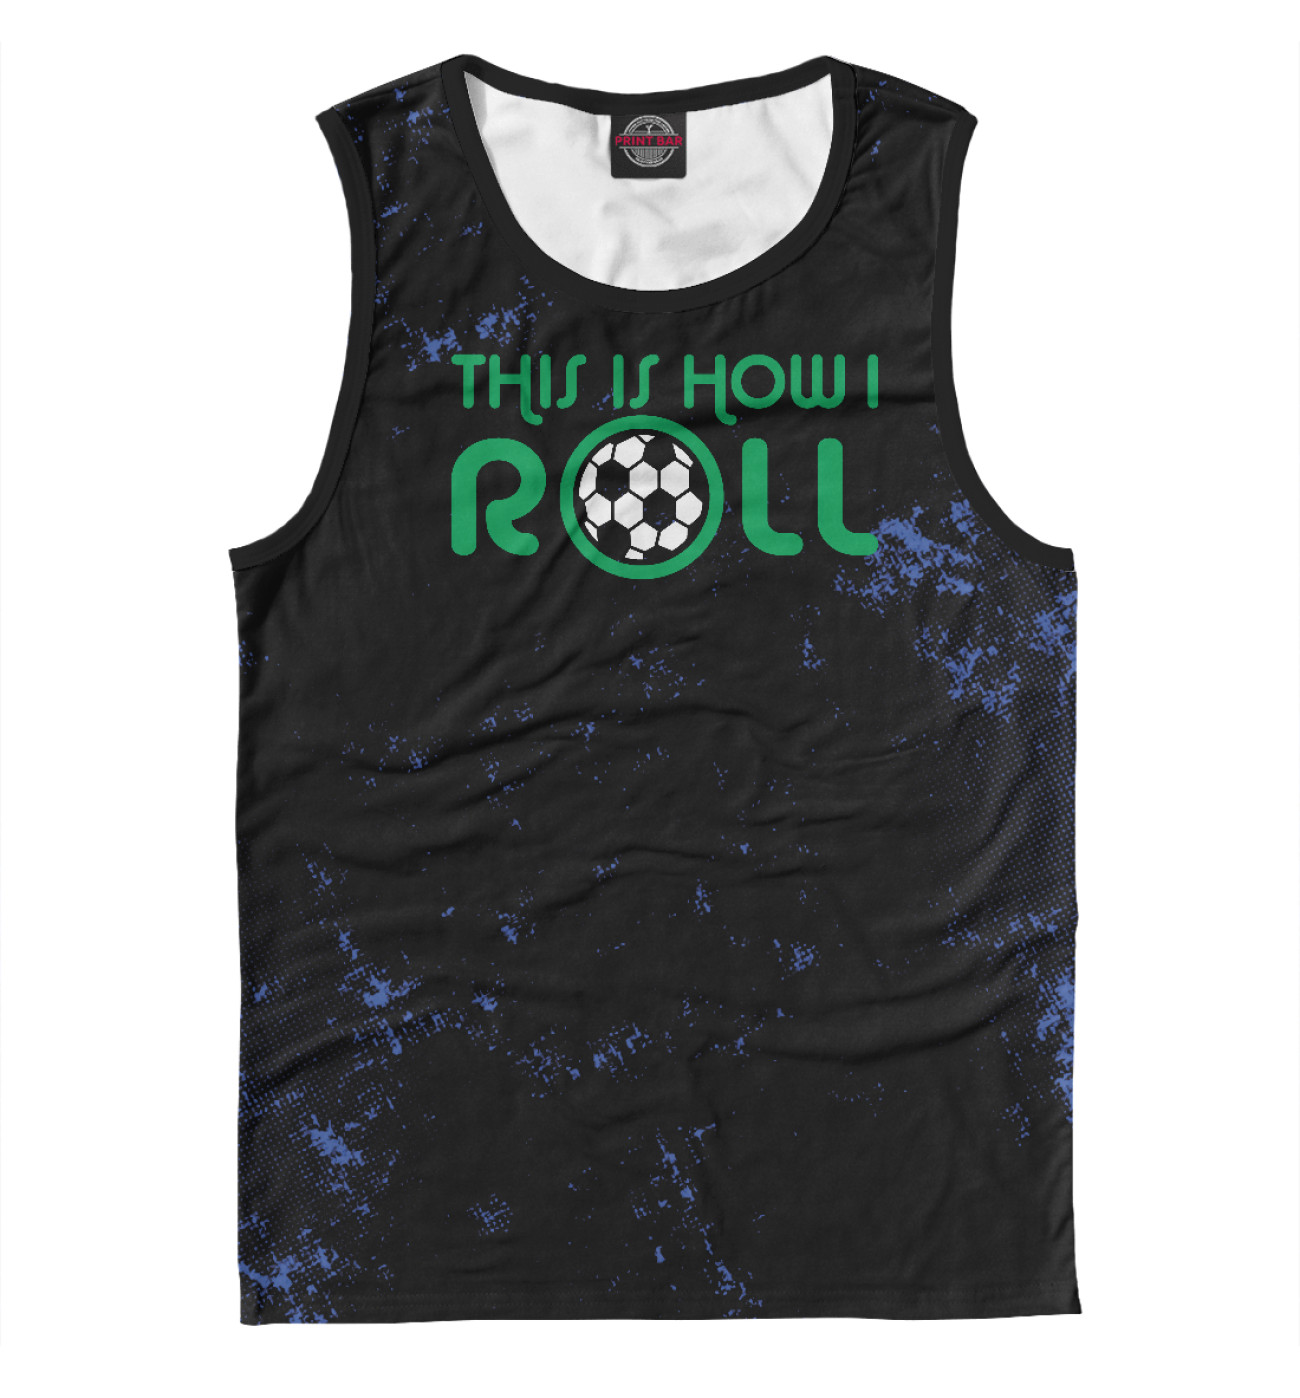 Мужская Майка This Is How I Roll Soccer, артикул: FTO-140586-may-2